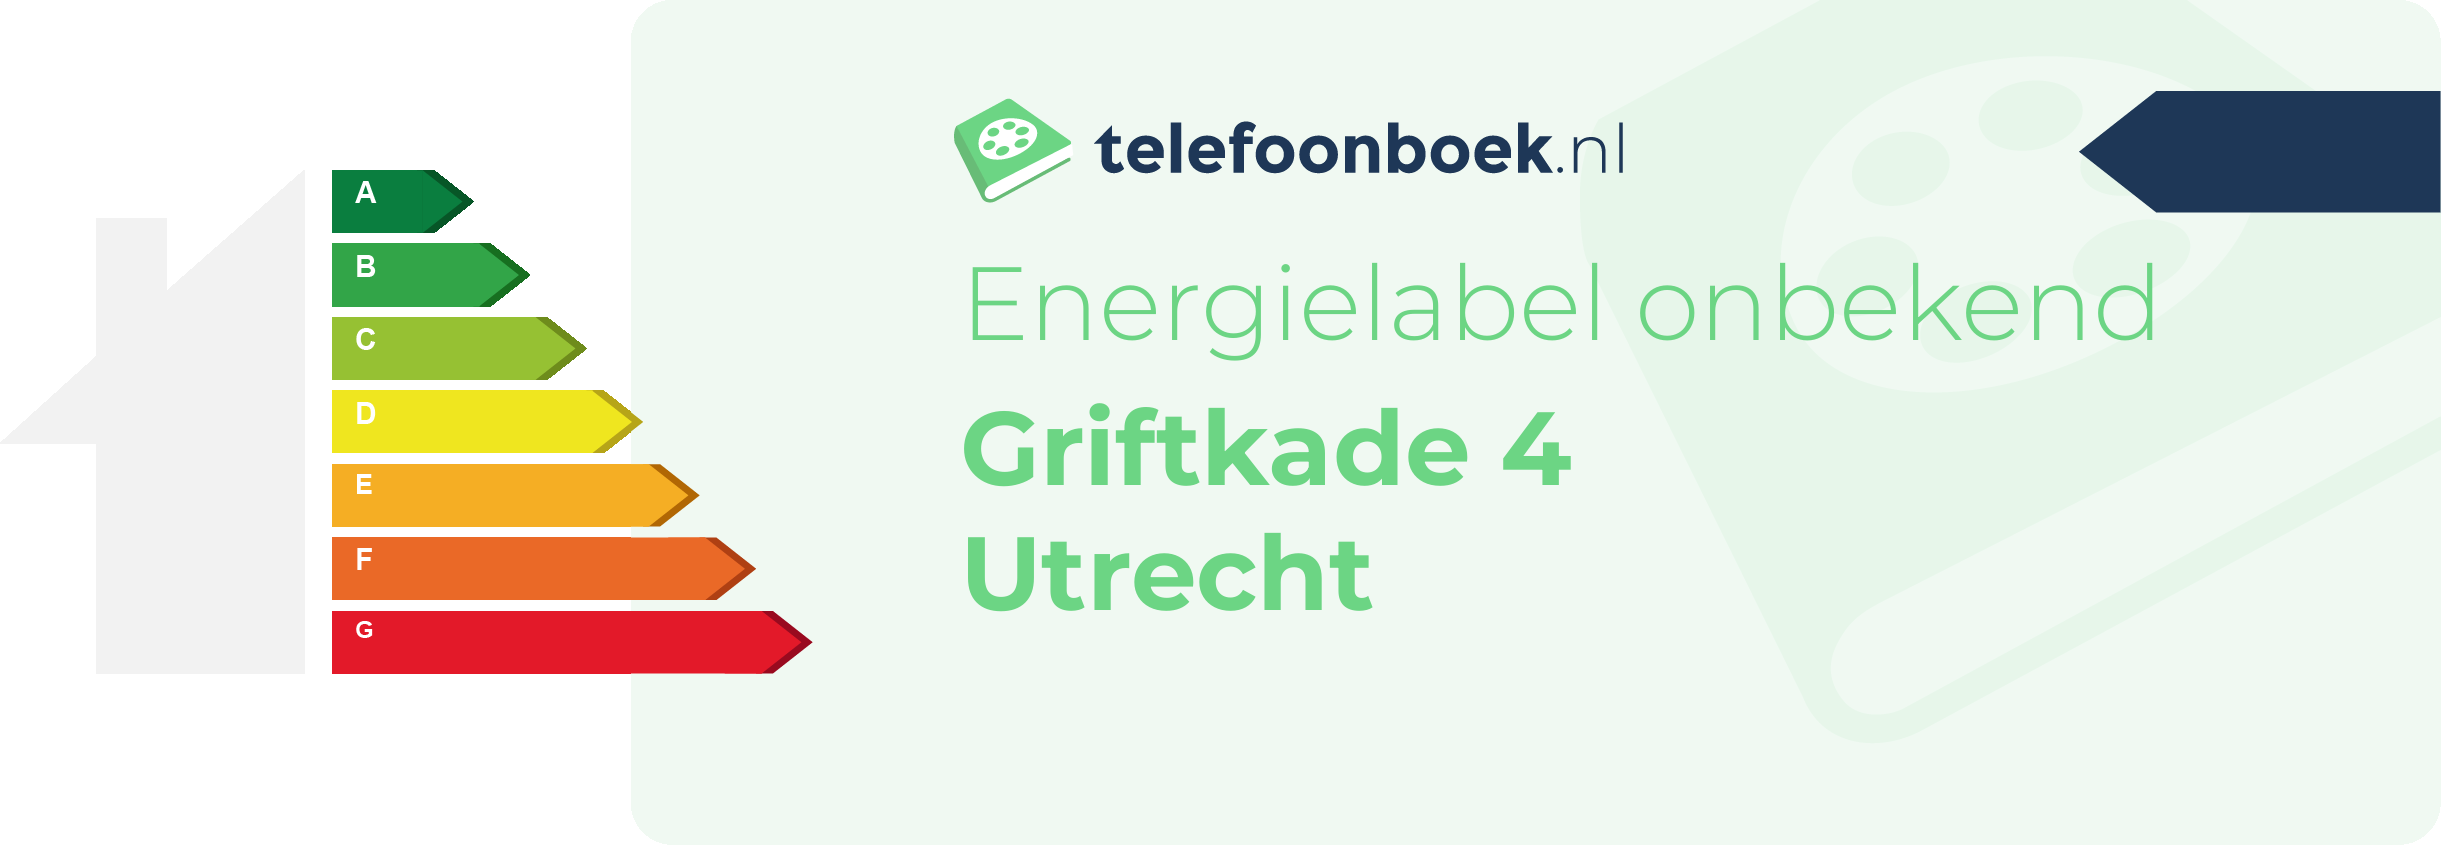 Energielabel Griftkade 4 Utrecht